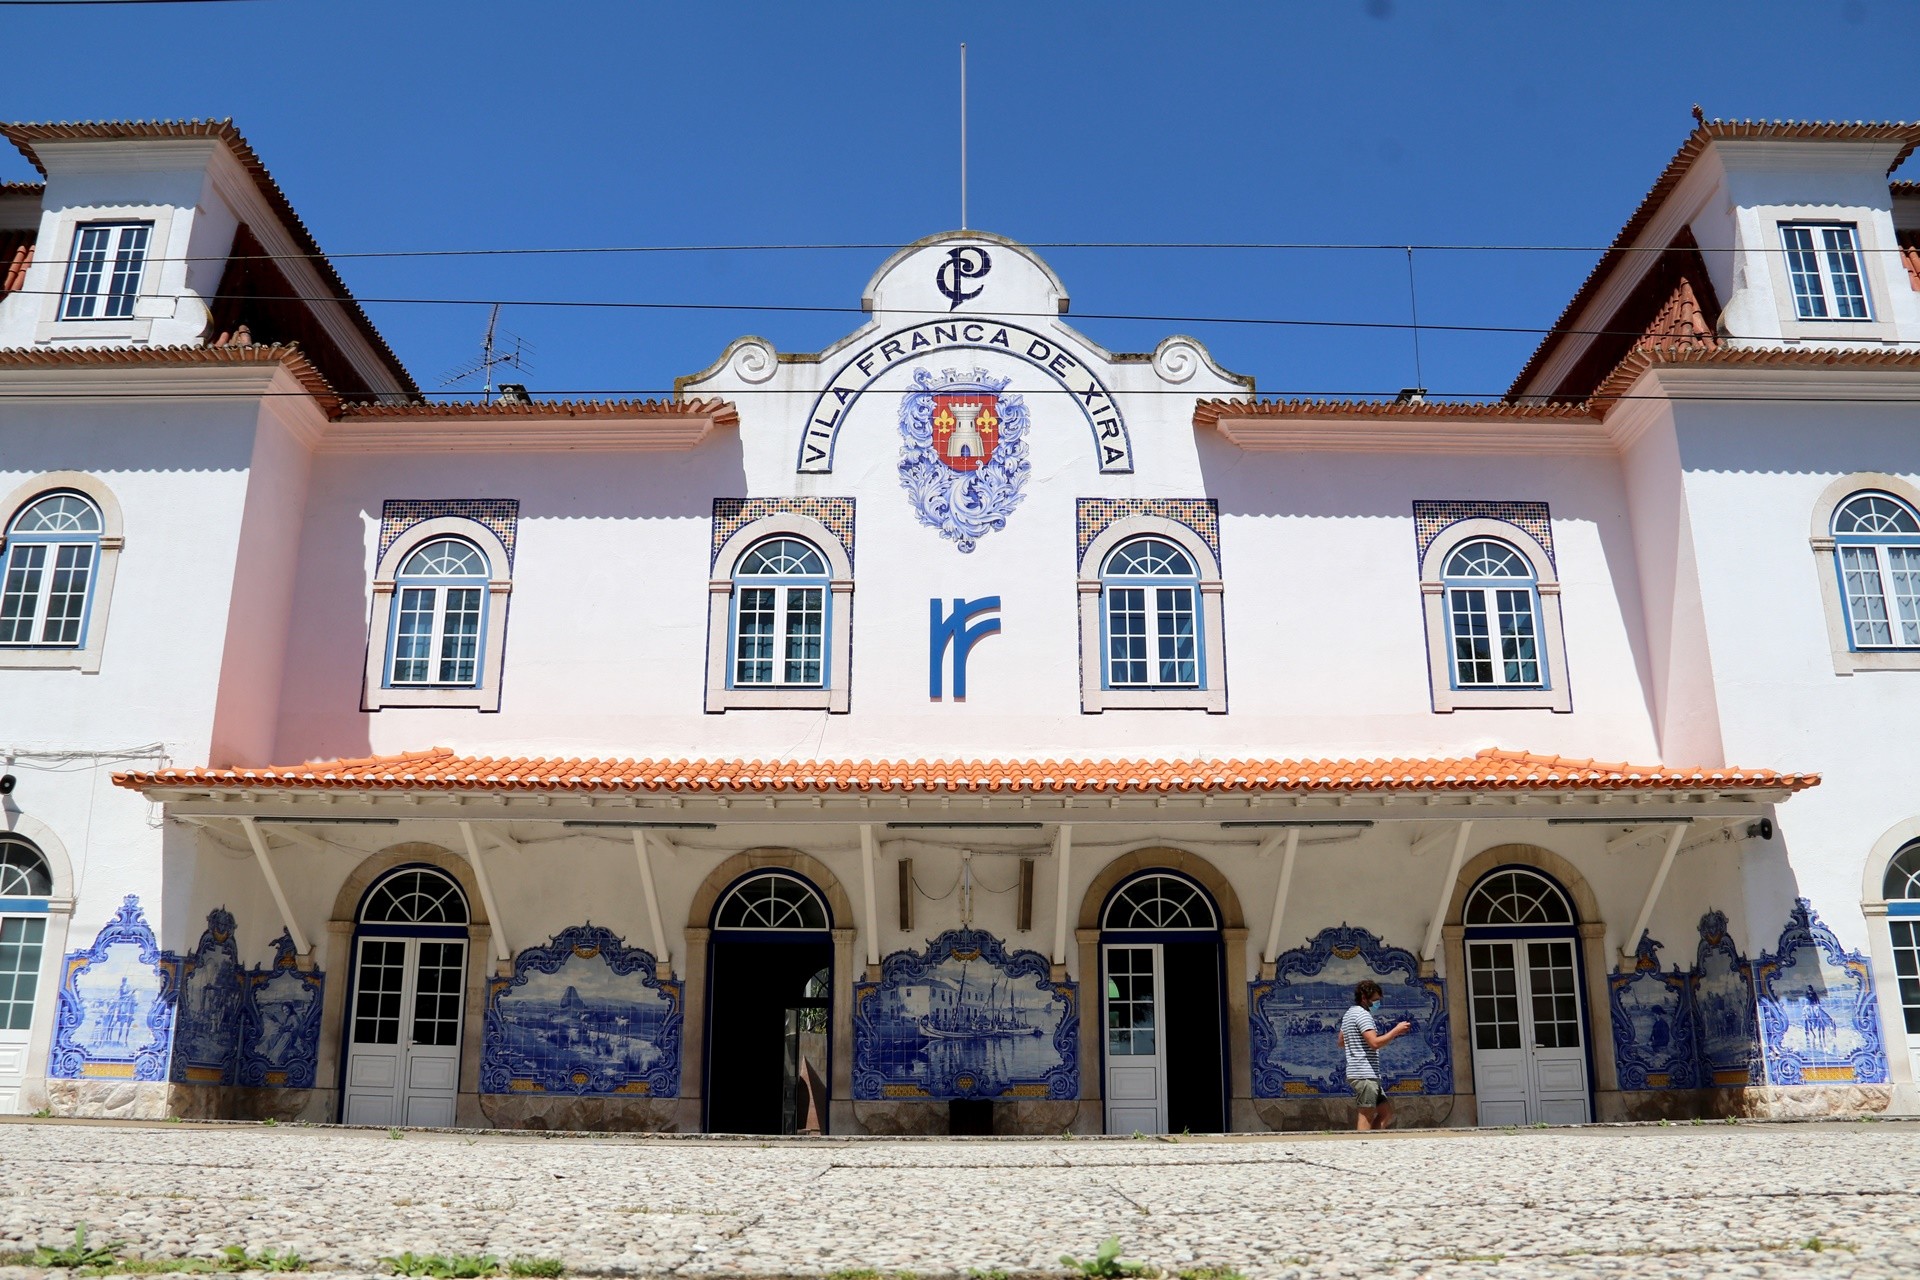 Estação Ferroviária de Vila Franca de Xira